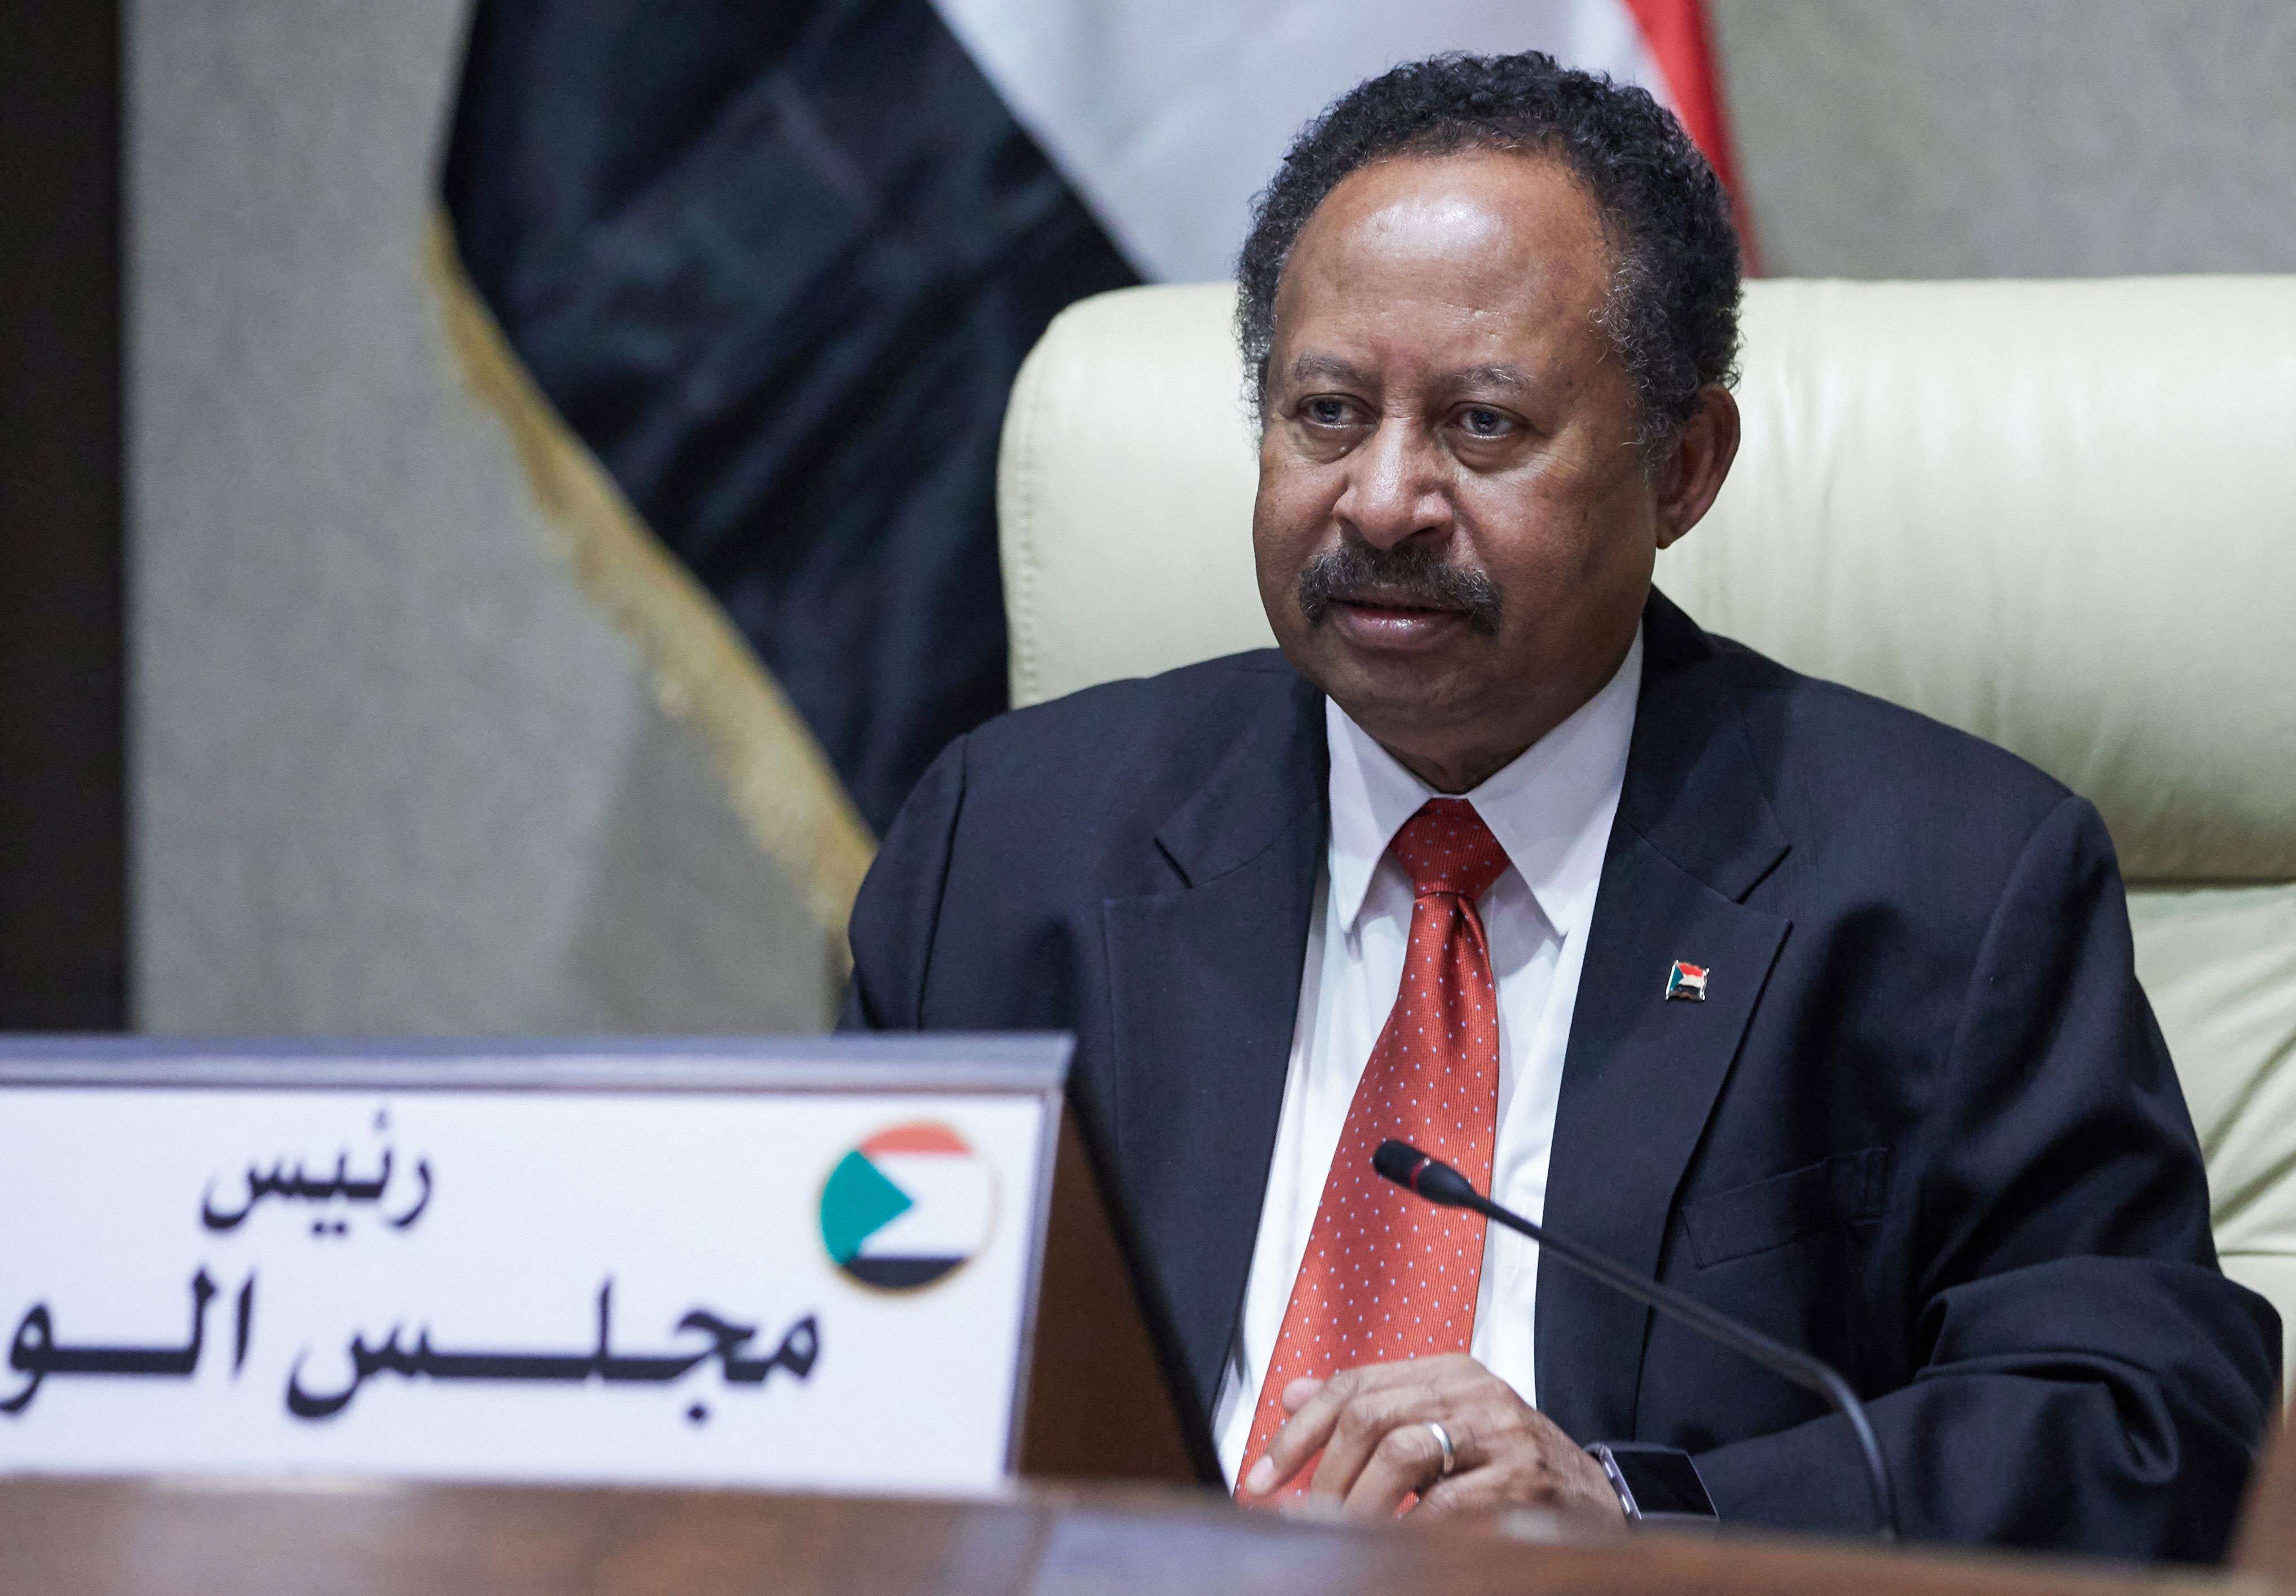 a6e85f25 b8b4 455f 94cc 53689f16ca25 - Le Premier ministre soudanais détenu dans le cadre d'une prise de pouvoir militaire